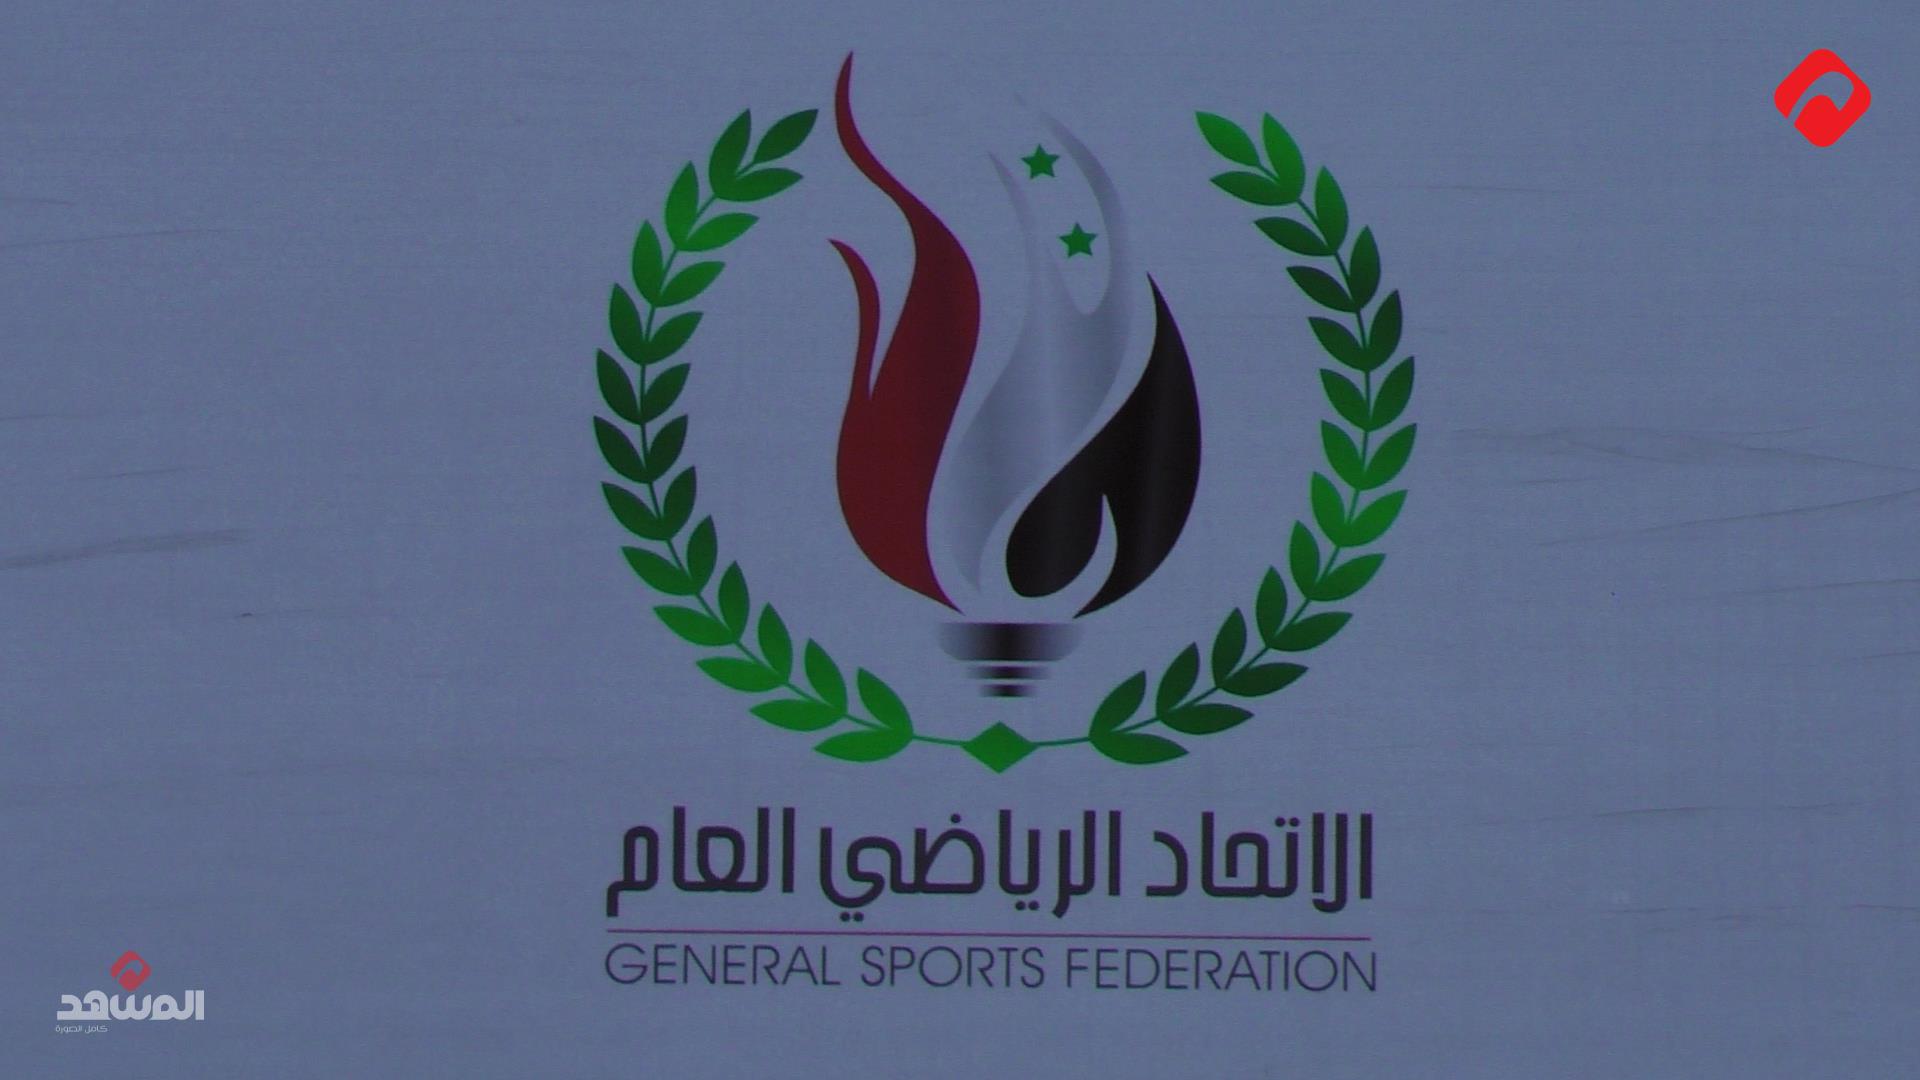 في العيد الذهبي للرياضة السورية: رسالة محبة من الرئيس الأسد وخمسون عاماً من العطاء والإنجازات (فيديو)